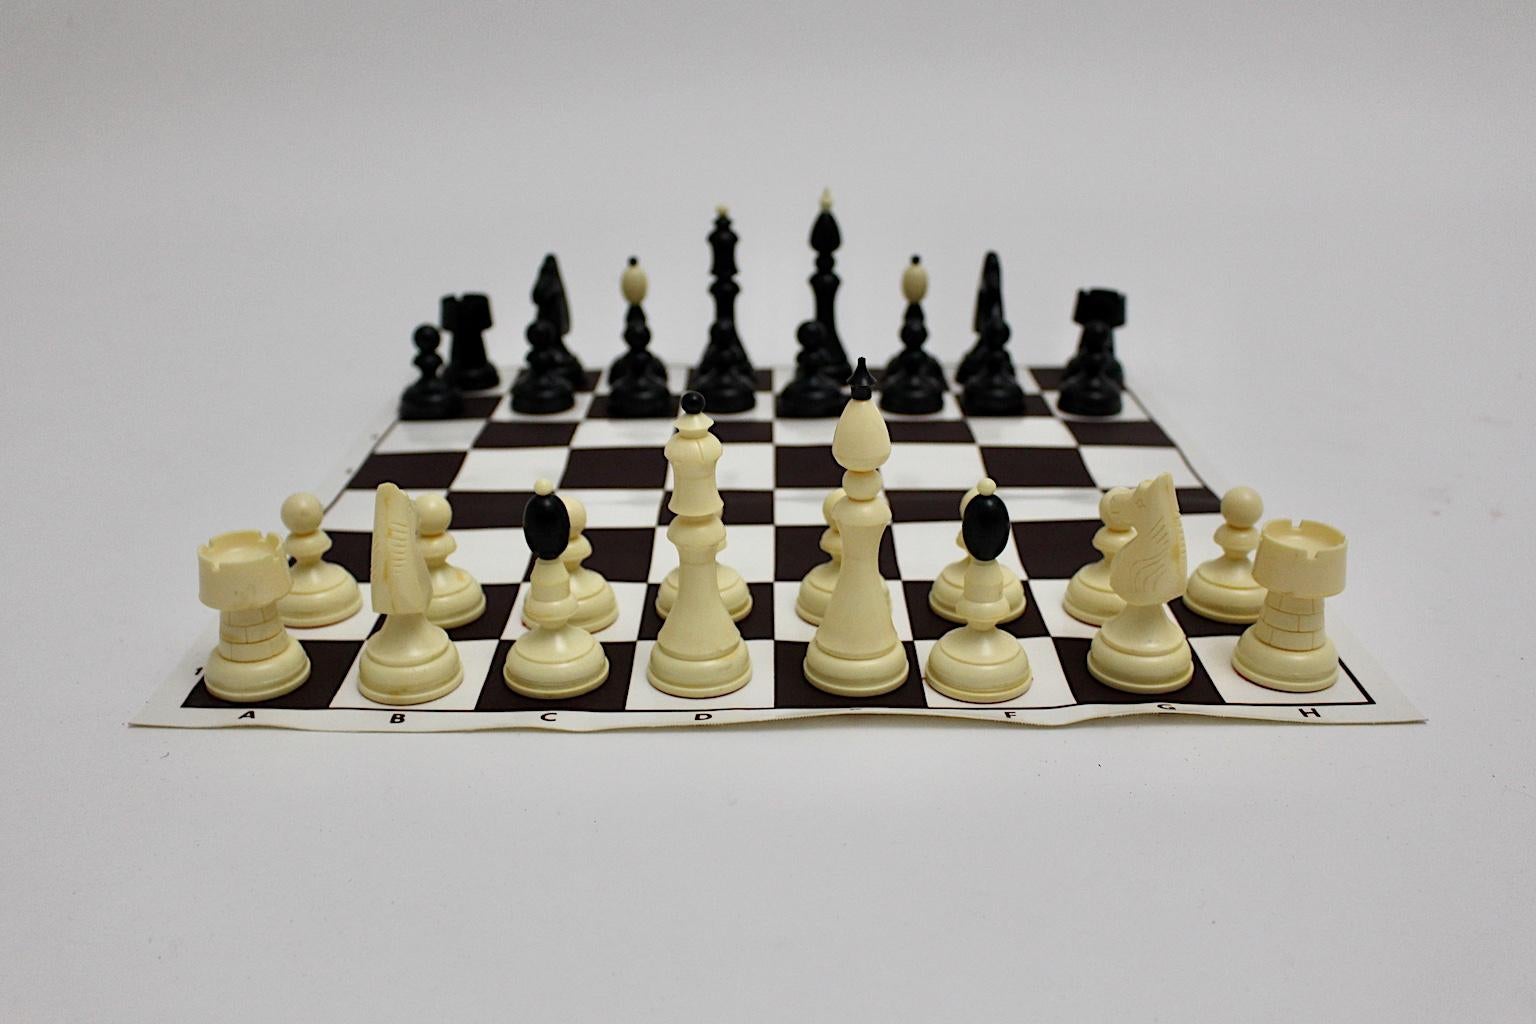 Jeu d'échecs moderne vintage en plastique noir et blanc Autriche années 1970,
Le plateau de jeu en plastique est flexible et permet donc de rouler.
Les figurines sont également en plastique. La hauteur du roi est de 11 cm.
Pas de boîte